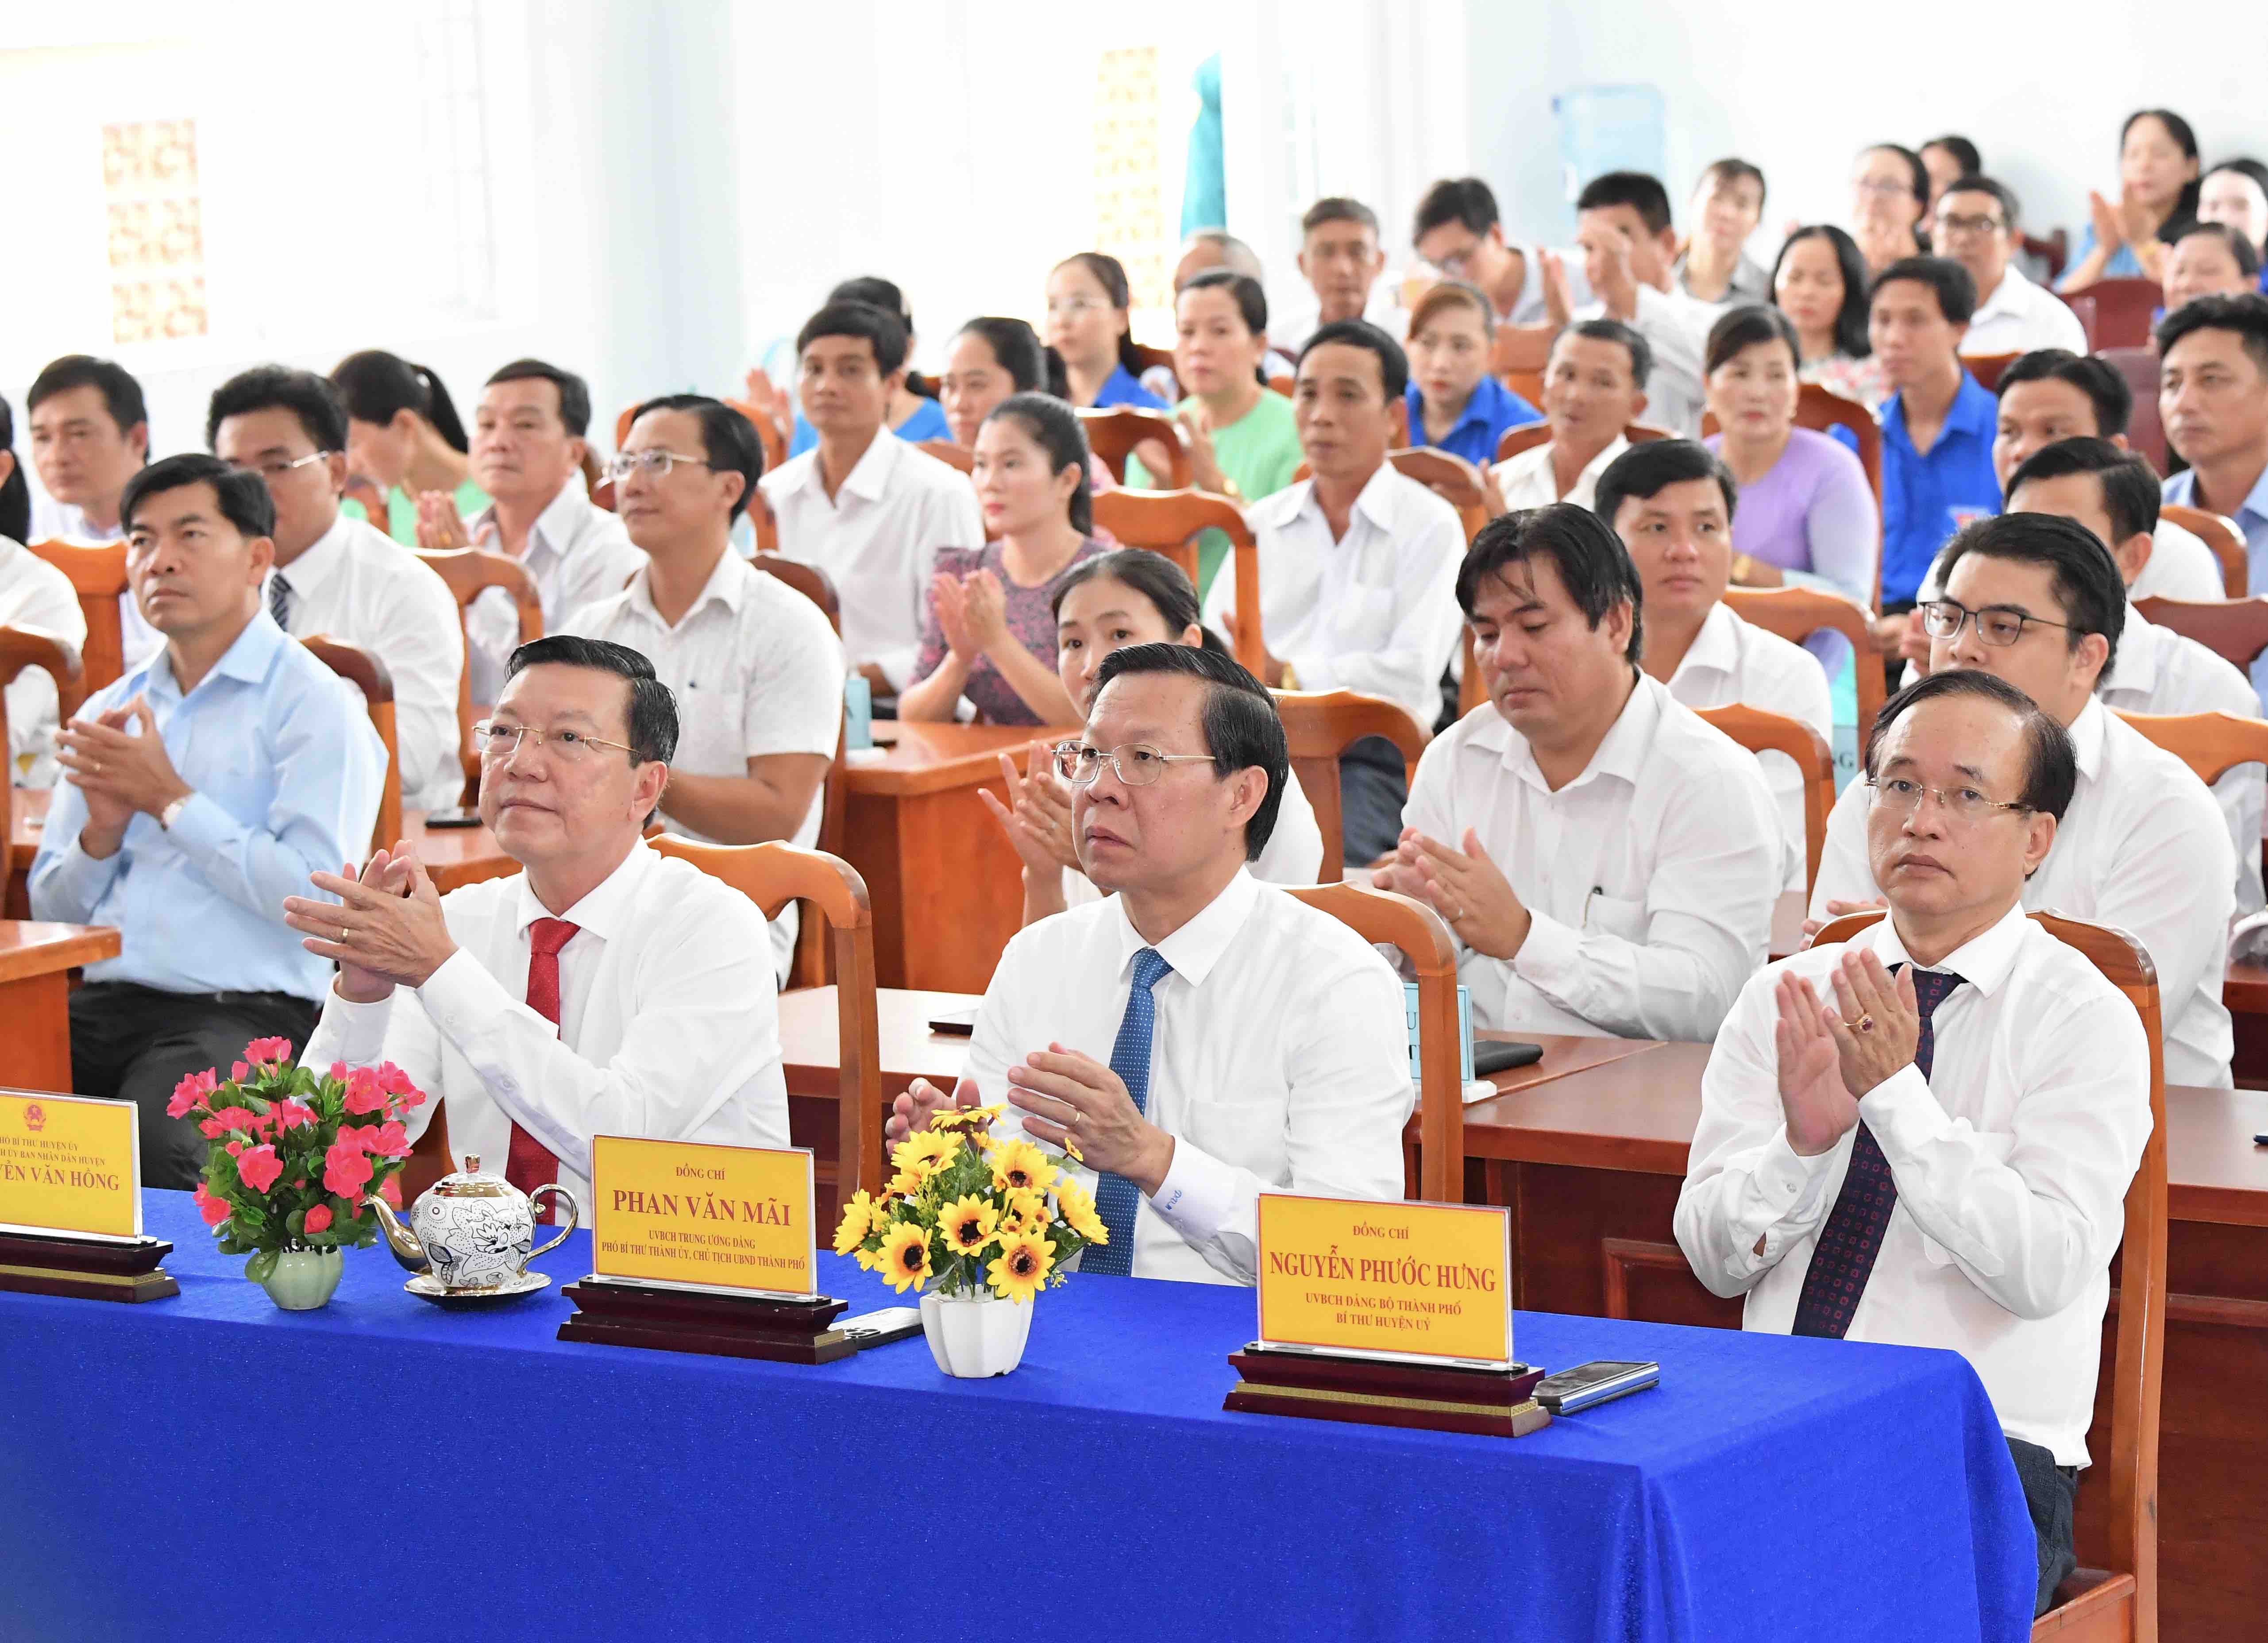 Chủ tịch UBND TPHCM Phan Văn M&atilde;i c&ugrave;ng c&aacute;c đại biểu dự lễ c&ocirc;ng bố Nghị quyết 11 của HĐND TPHCM. Ảnh: VIỆT DŨNG